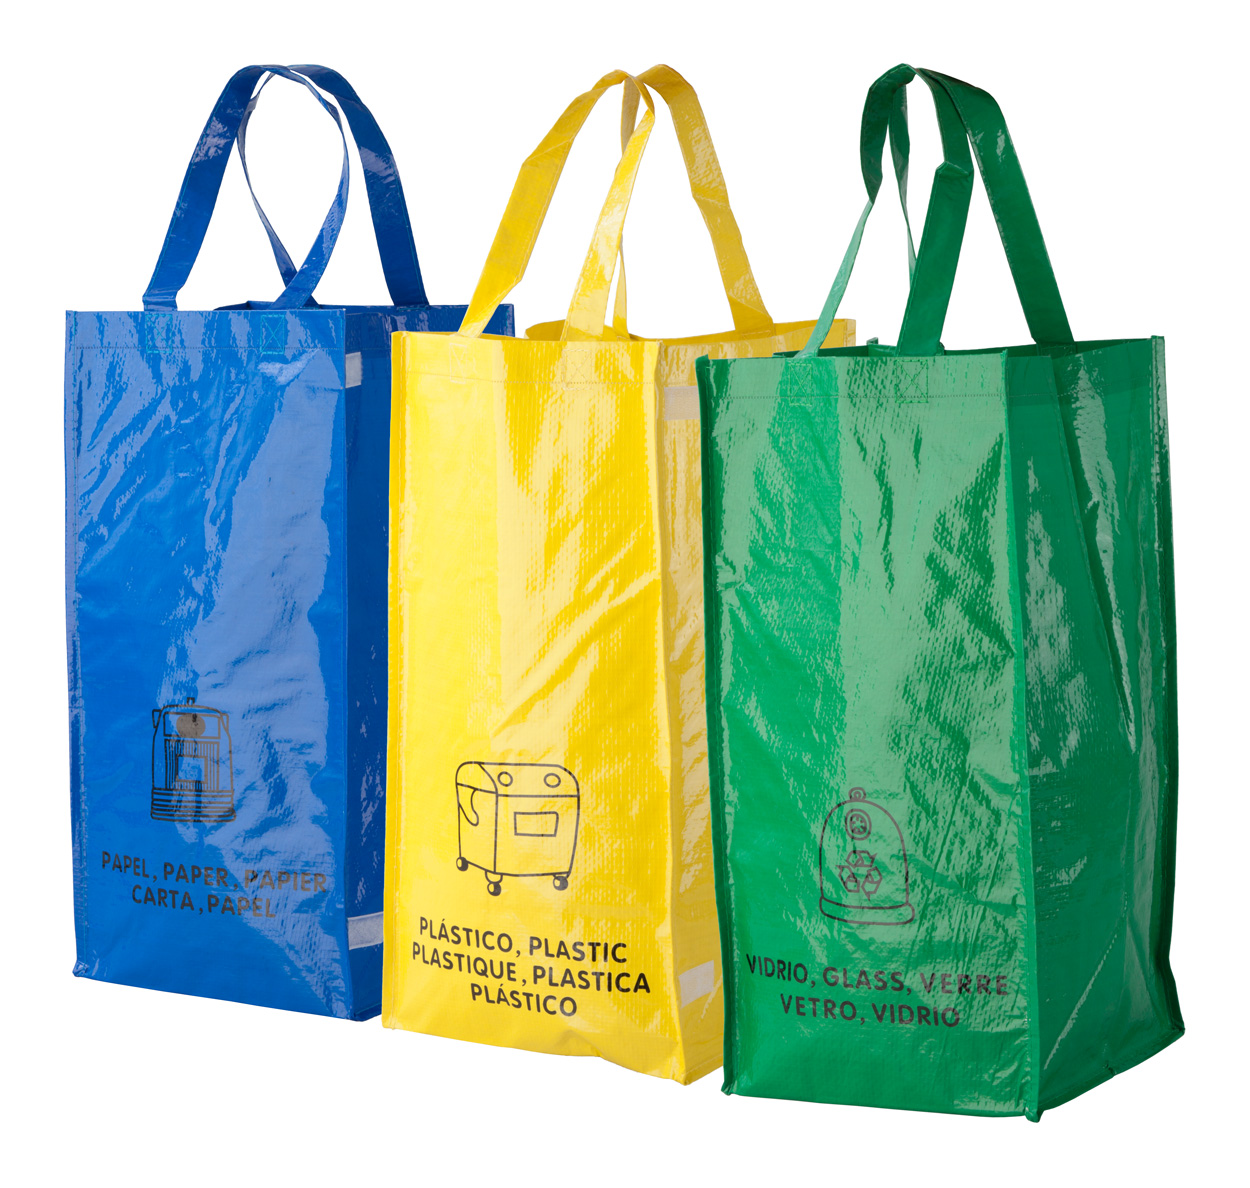 Promo  Lopack torbe od netkanog materijala za reciklirani otpad, 3 komada,